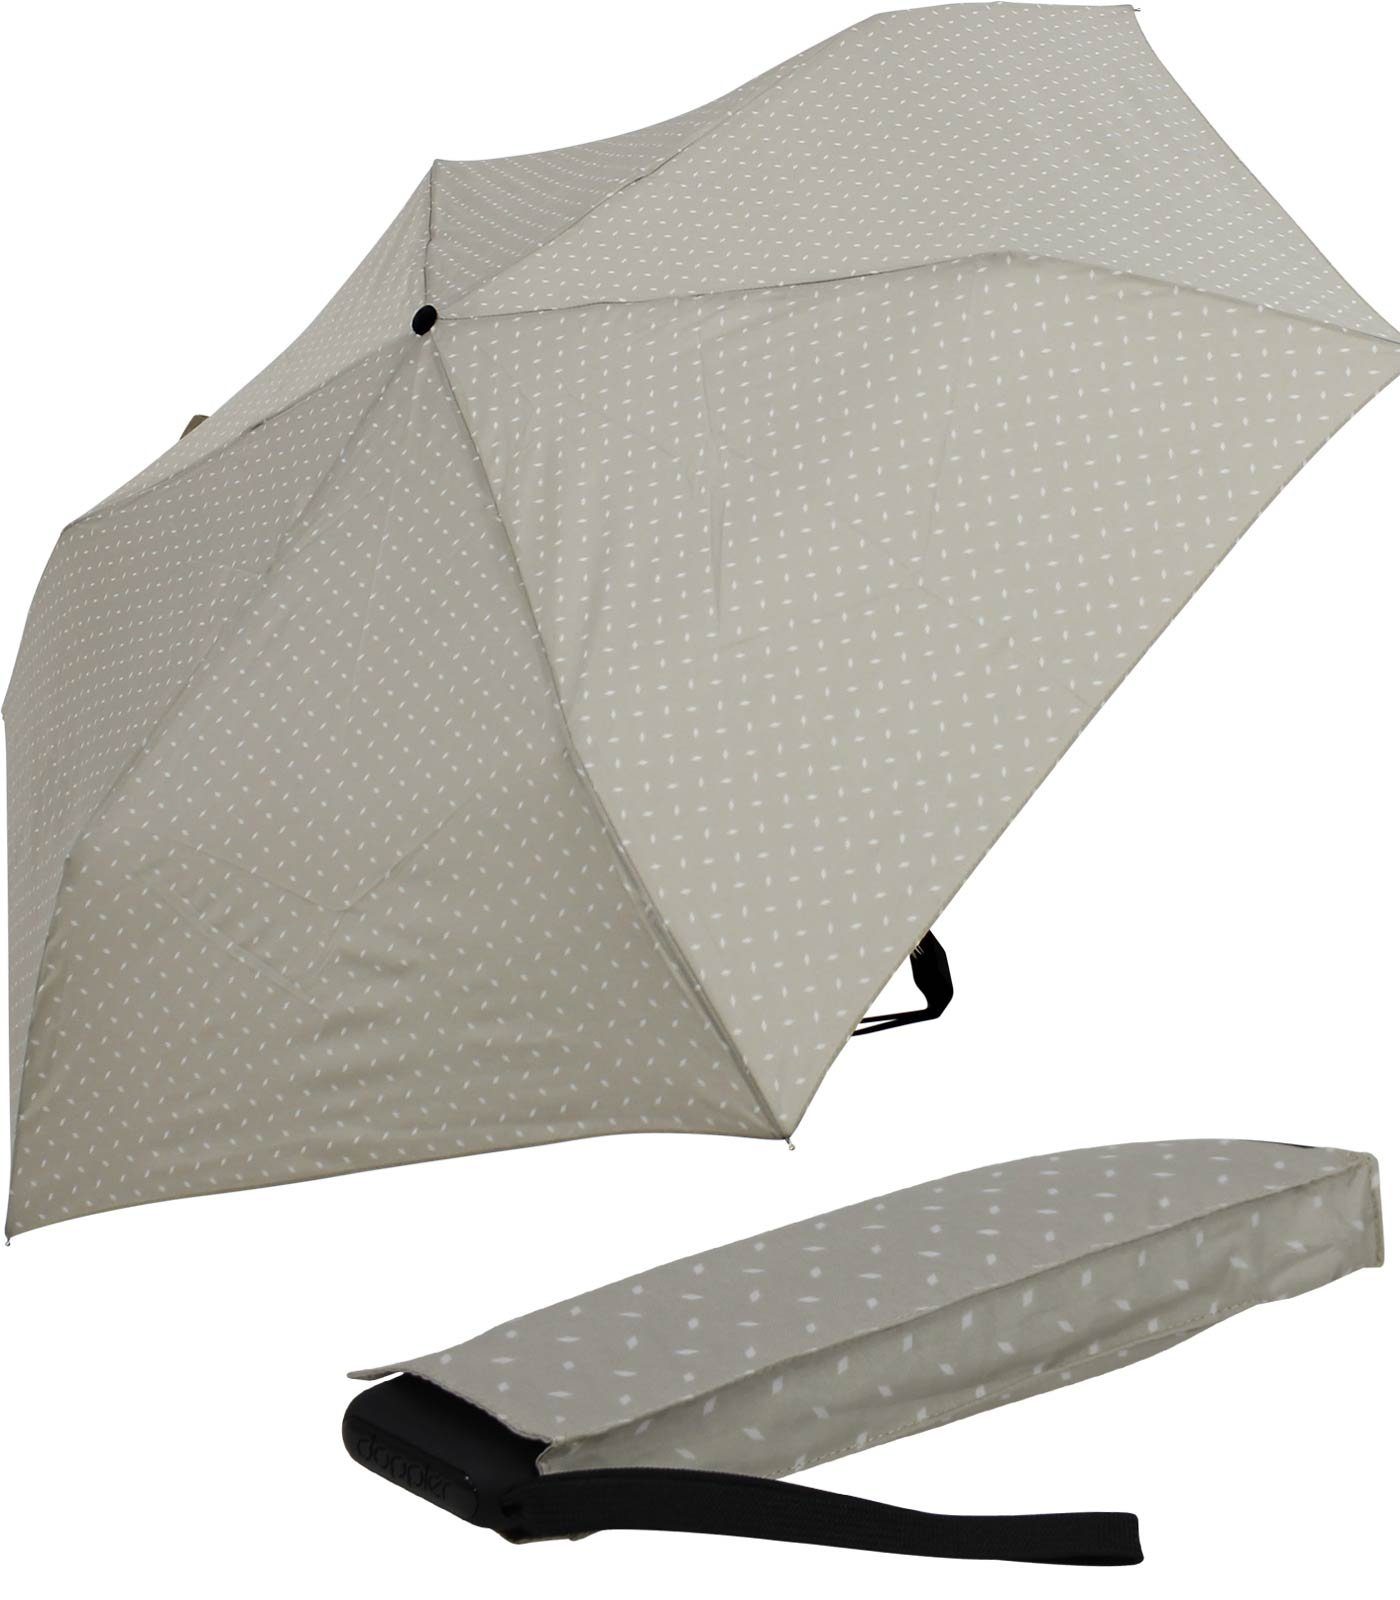 überall Schirm doppler® dieser jede Platz und leichter ein Begleiter Tasche, flacher Taschenregenschirm findet treue für